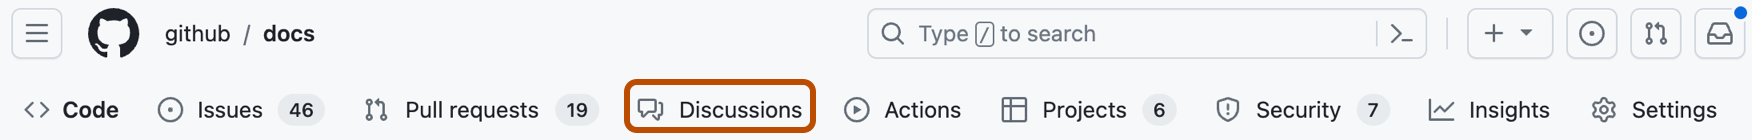 GitHub リポジトリのタブのスクリーンショット。 [ディスカッション] が濃いオレンジ色の枠線で囲まれています。